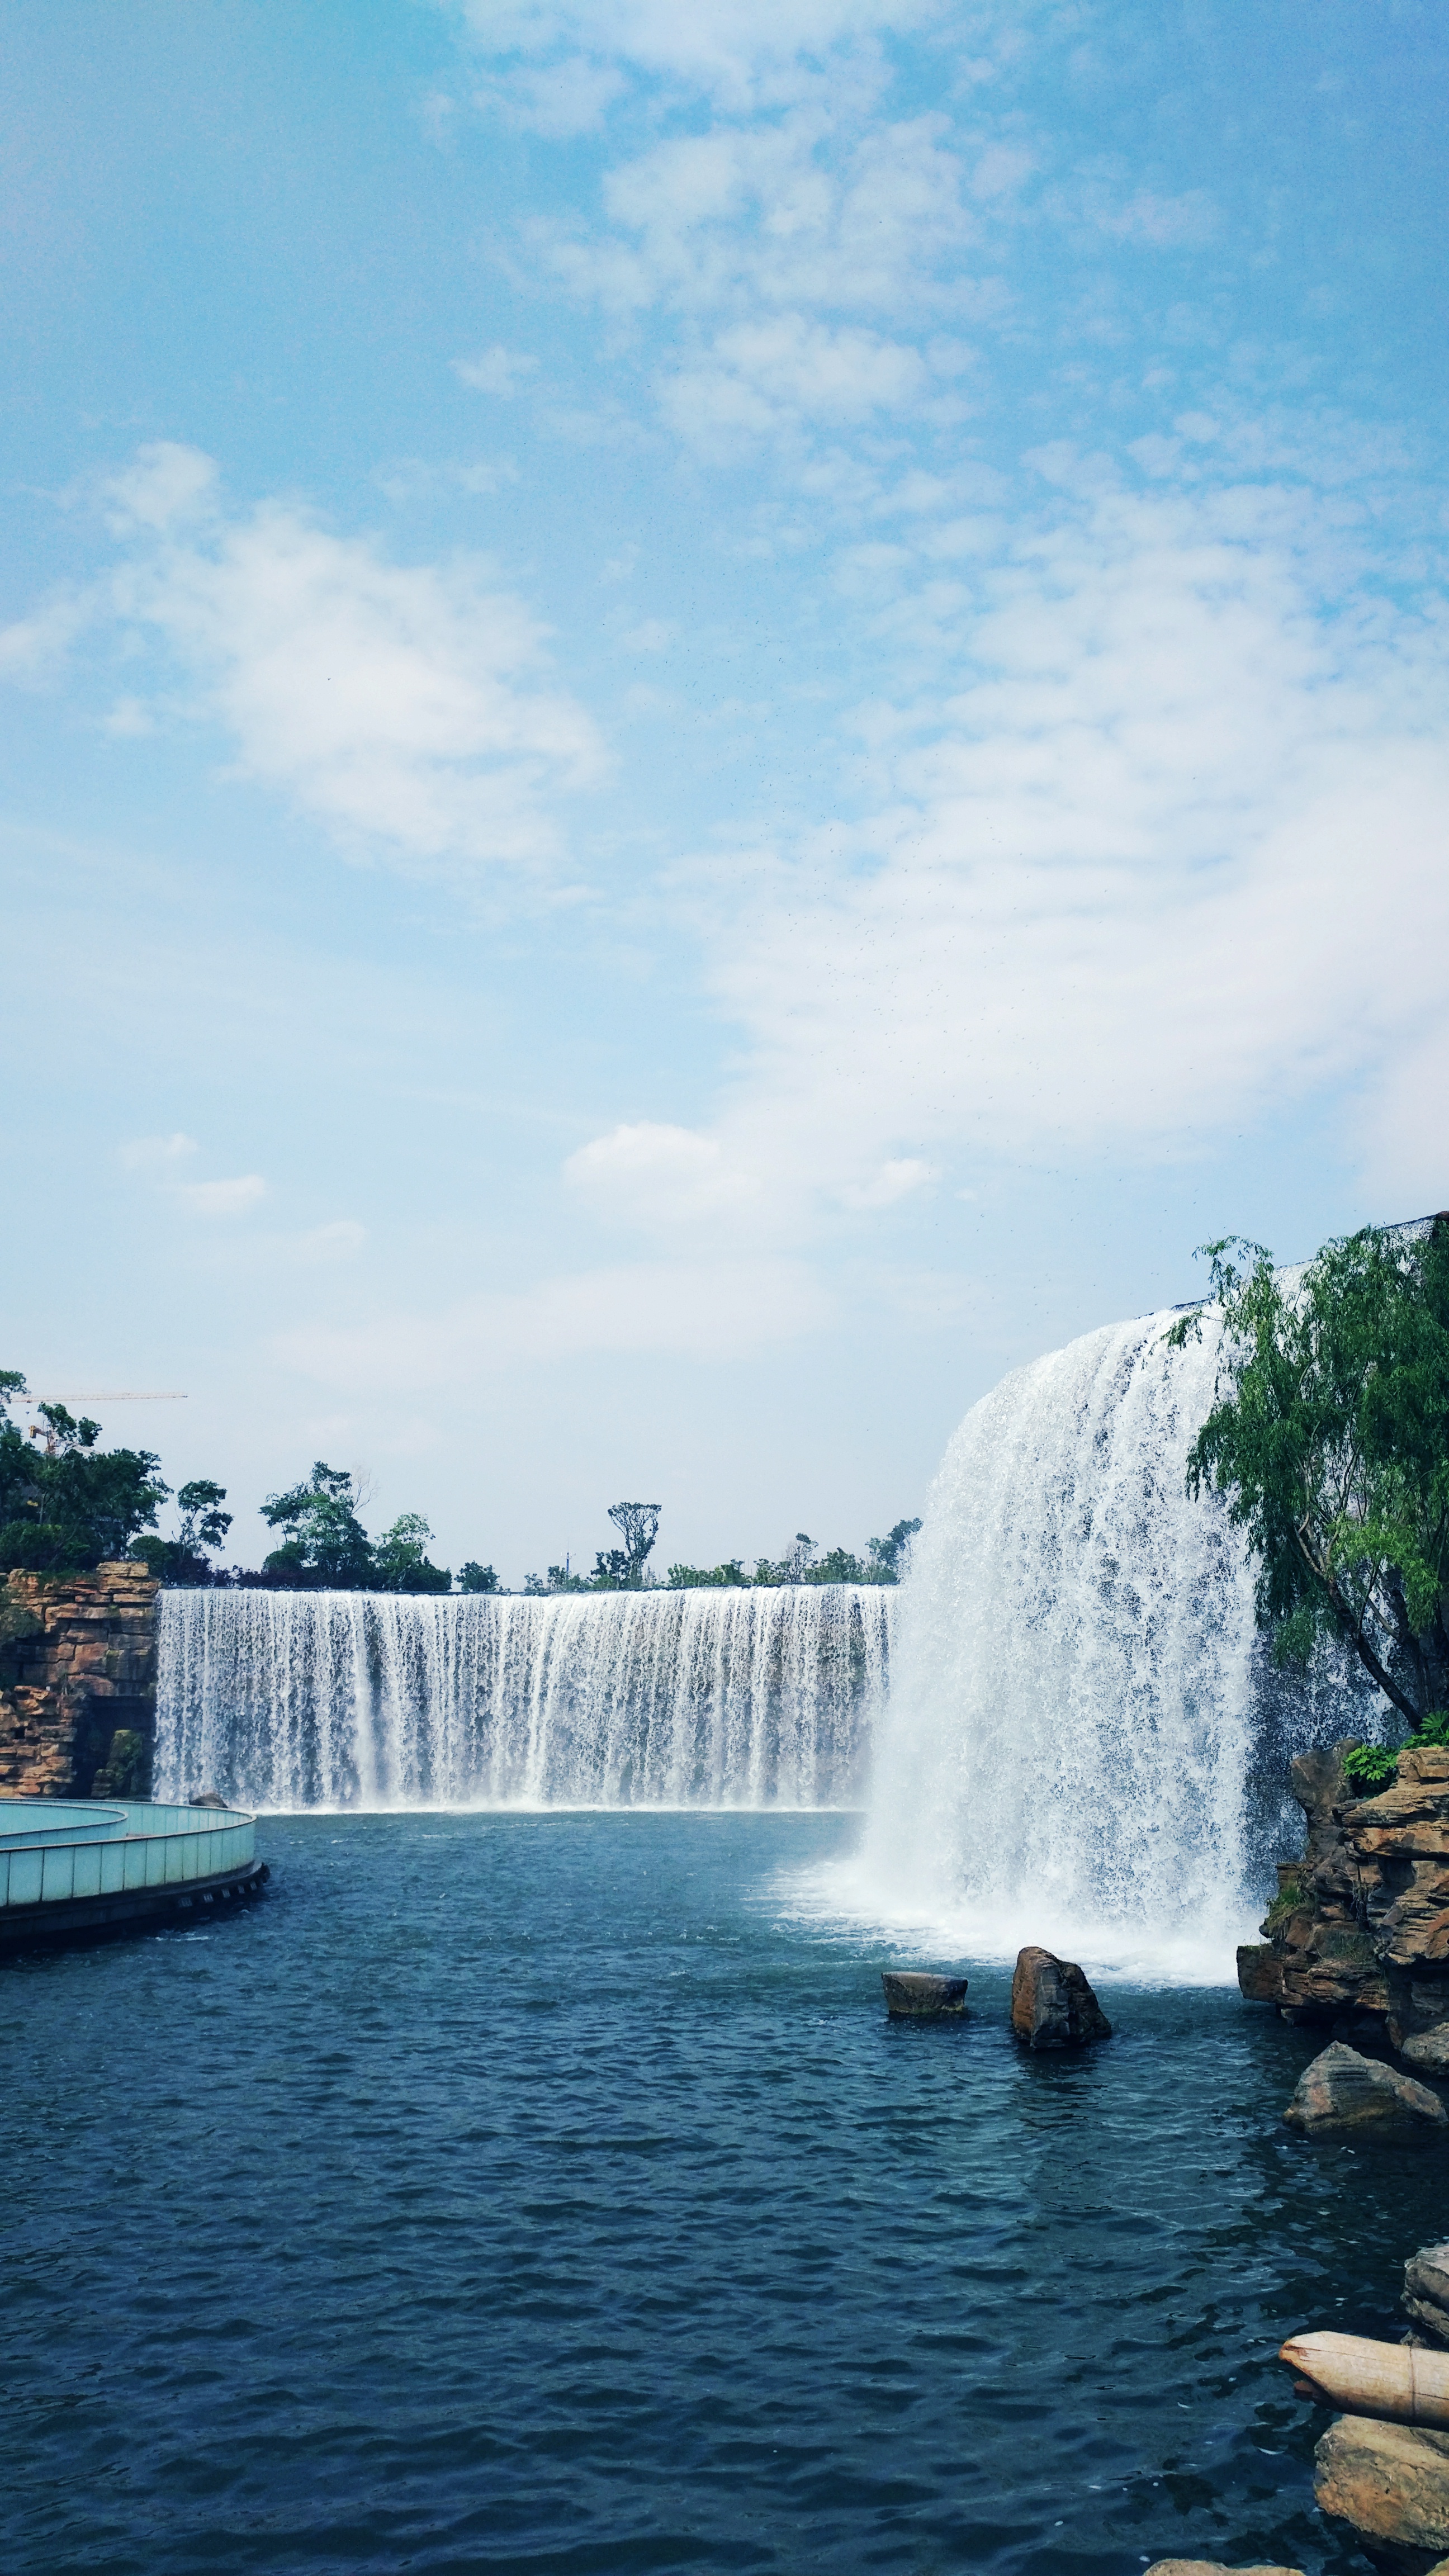 【摄影达人·xplay5】昆明瀑布公园